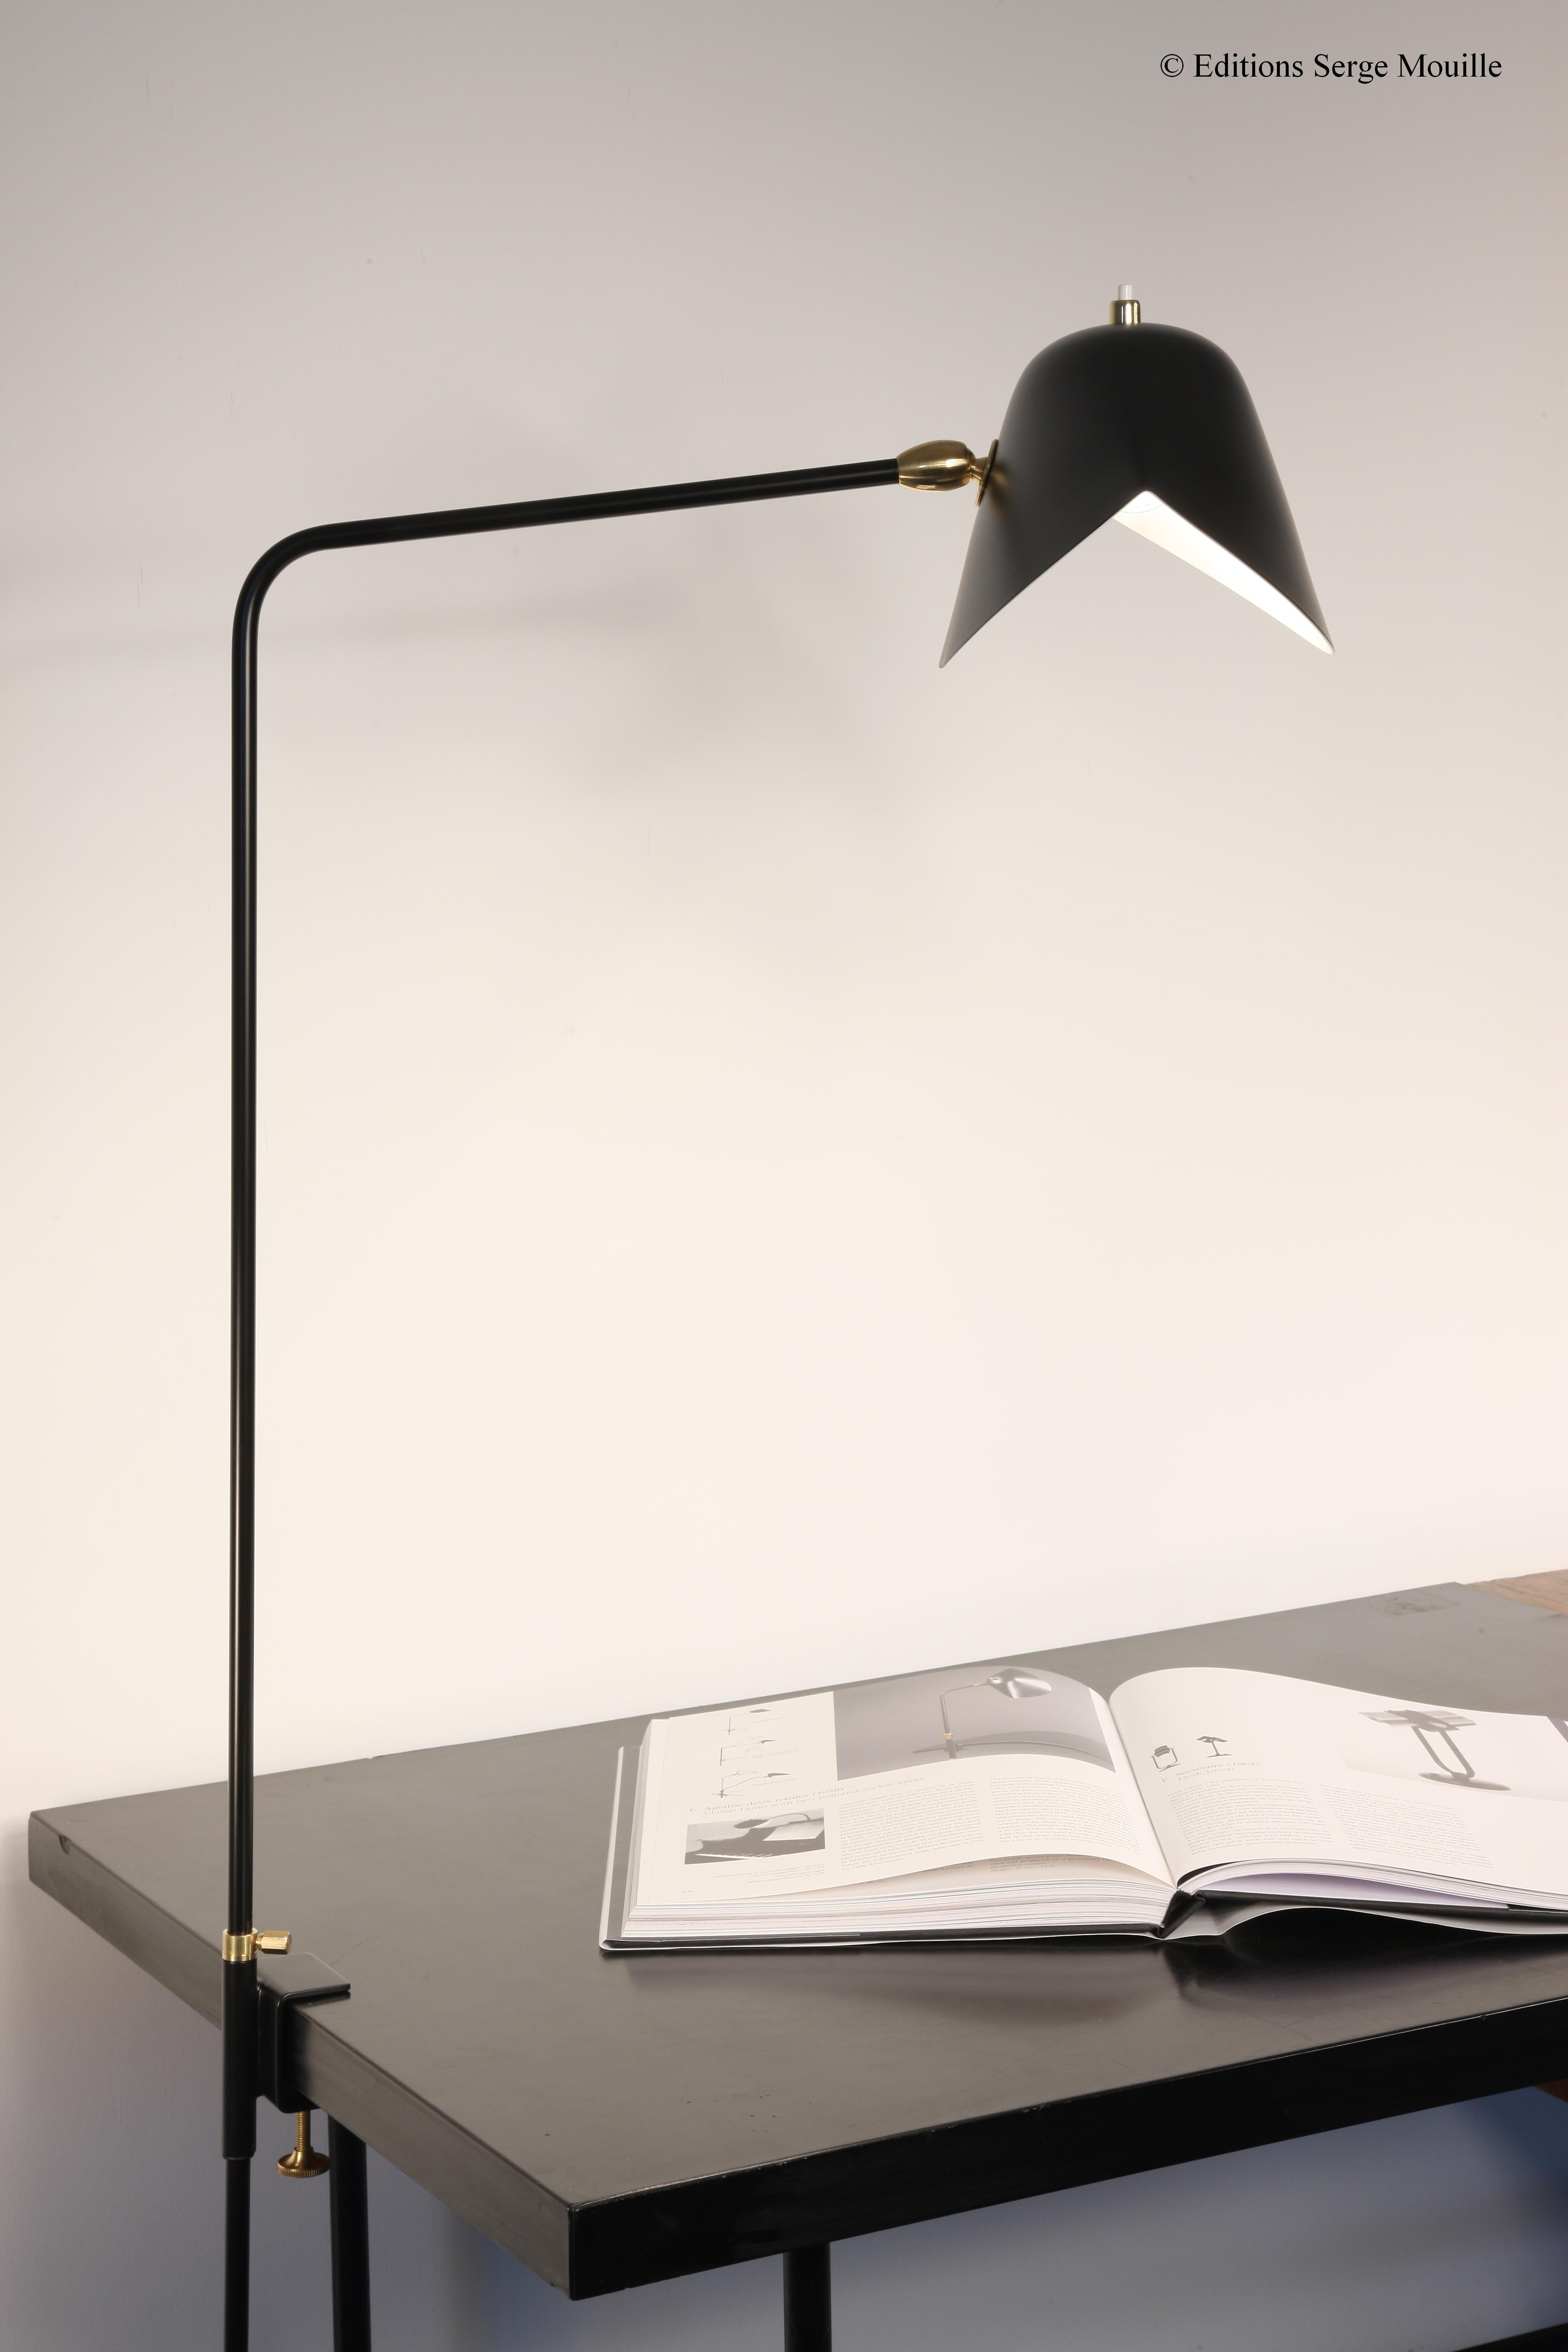 C'était la lampe de travail préférée d'Yves Saint Laurent pour dessiner ses croquis. Notez que seul le réflecteur peut servir d'éclairage vers le haut ou vers le bas.
Nous pouvons fabriquer la longueur de l'angle selon vos spécifications.